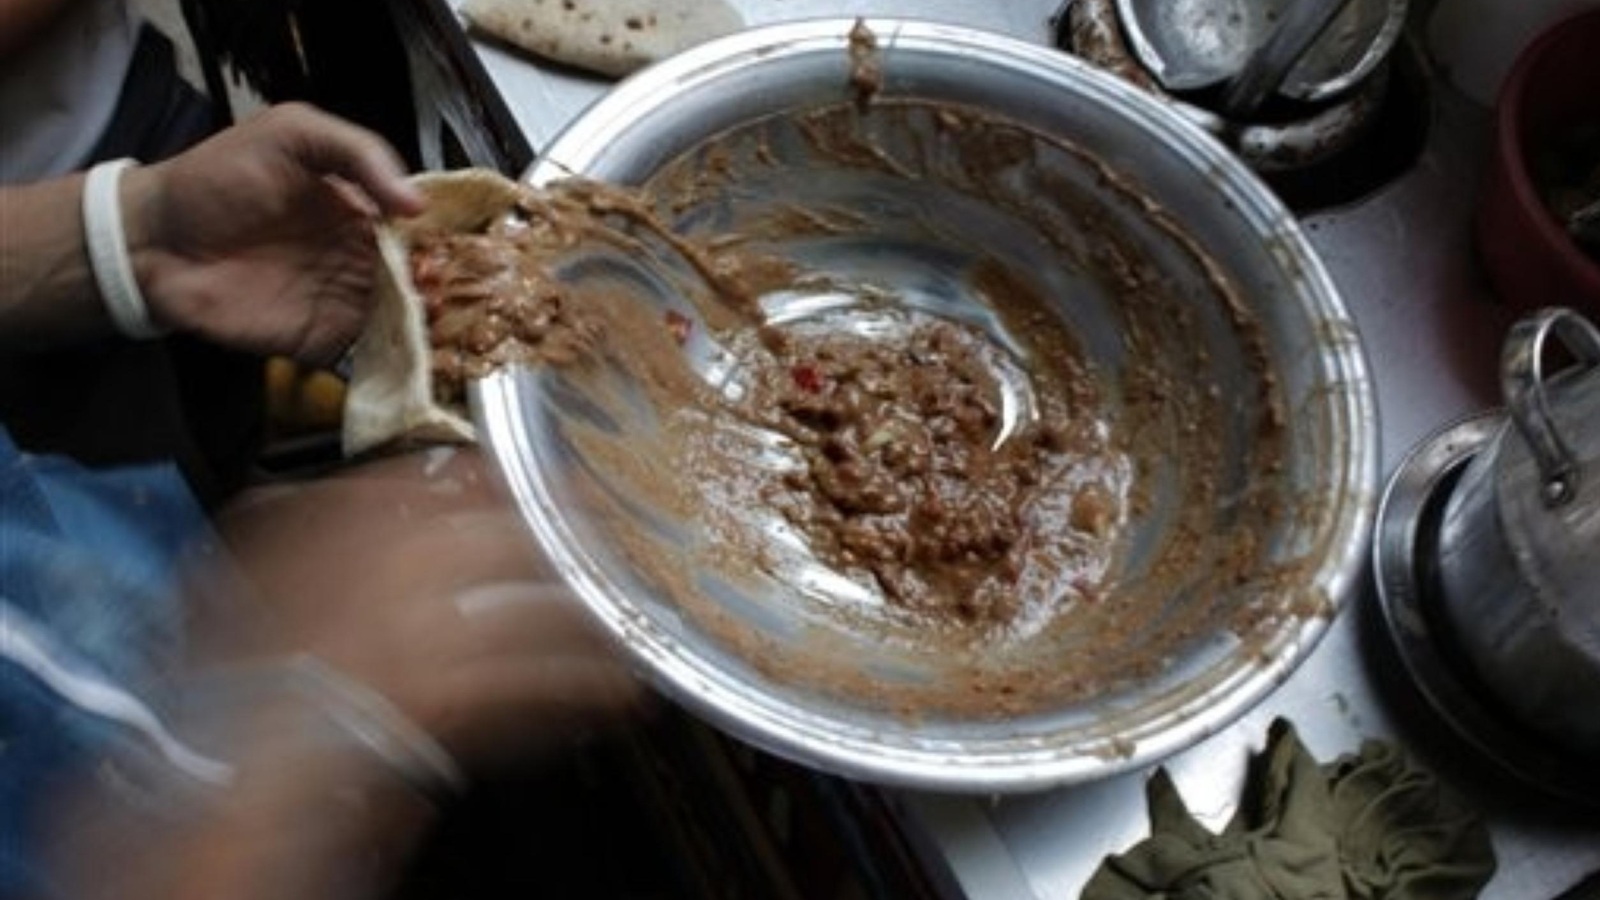 الفول هو الأكلة الشعبية الأكثر انتشارا في مصر (أسوشيتد برس)